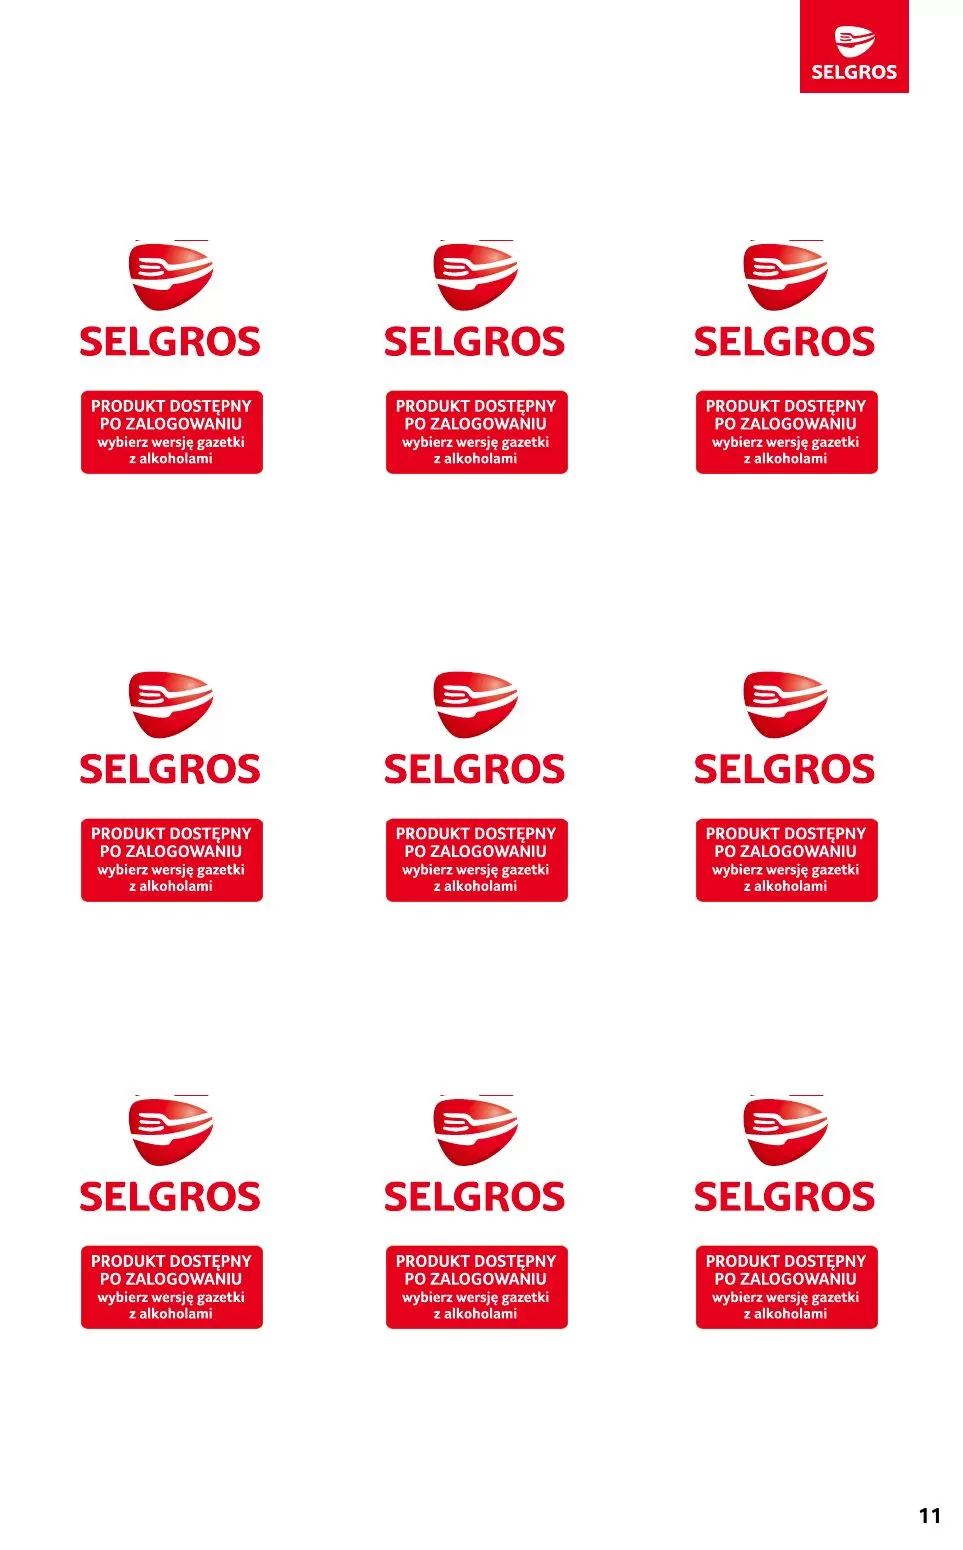 Gazetka promocyjna sklepu Selgros - EURO HIT CENOWY. Sprawdź nasze super produkty! - data obowiązywania: od 16.11 do 29.11